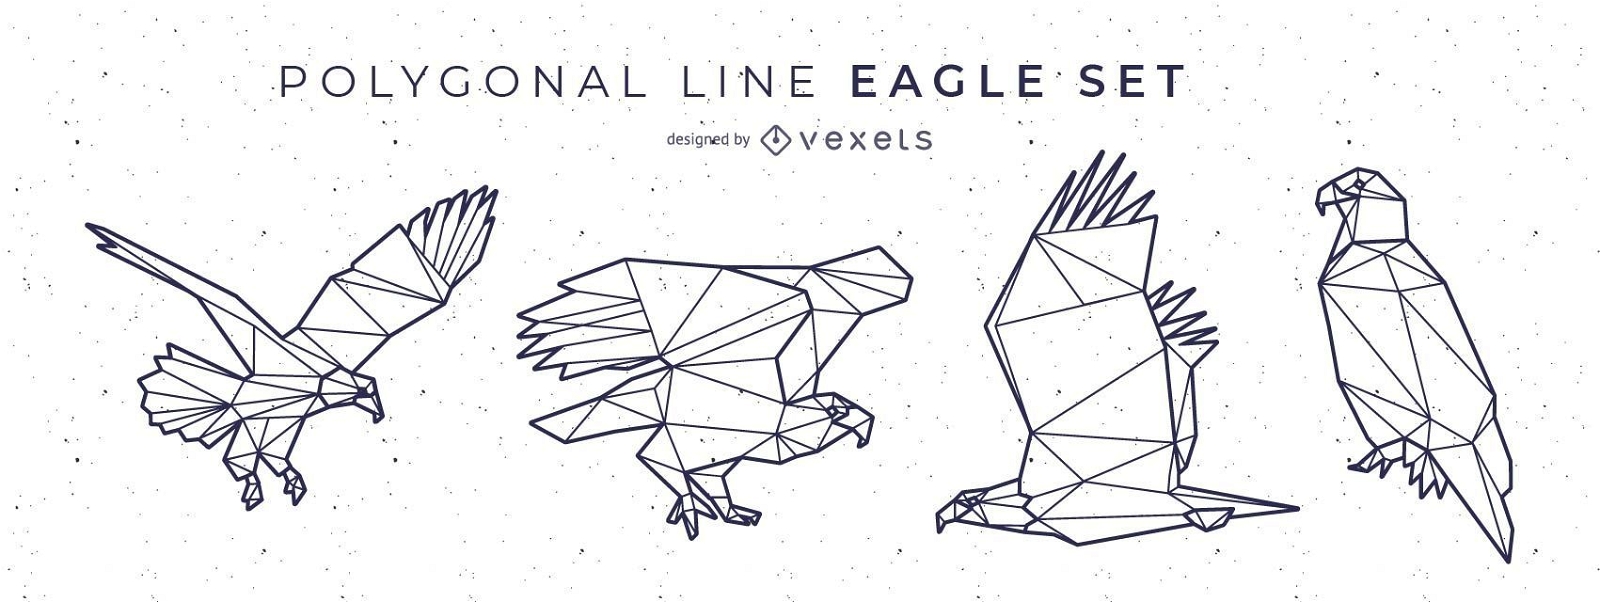 Polygonale Linie Eagle Design